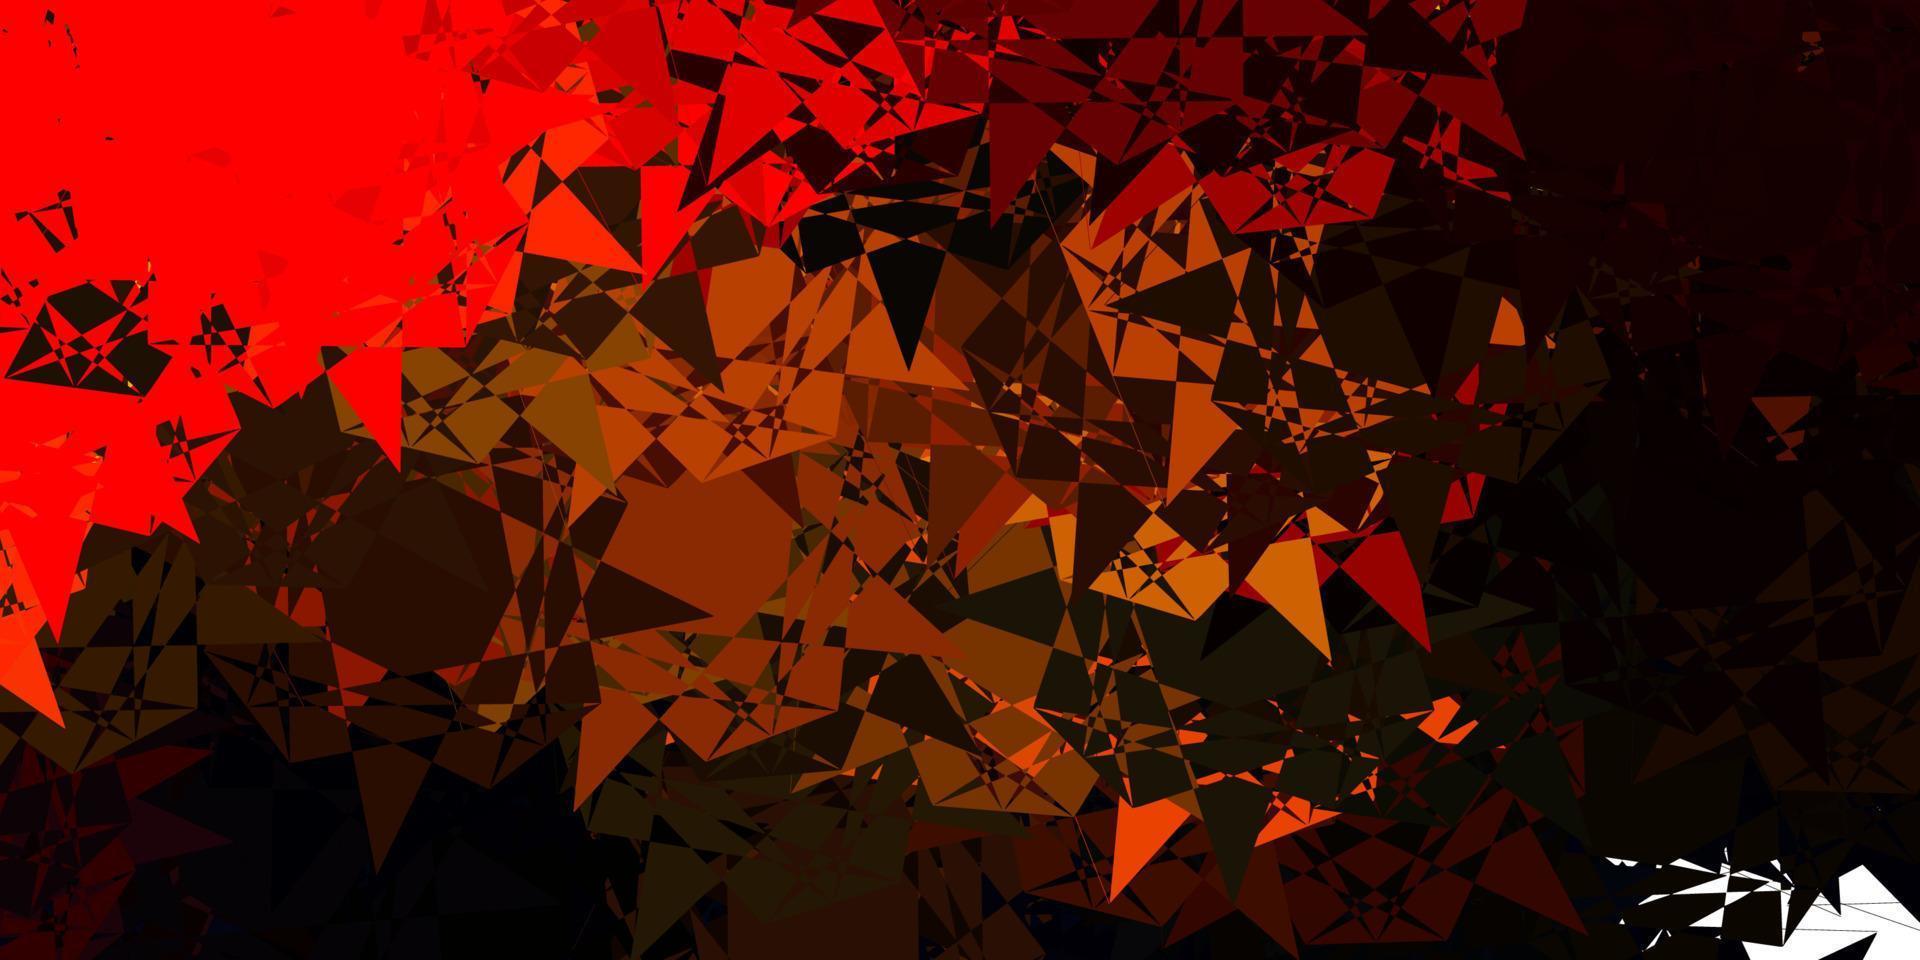 texture vectorielle orange foncé avec des triangles aléatoires. vecteur